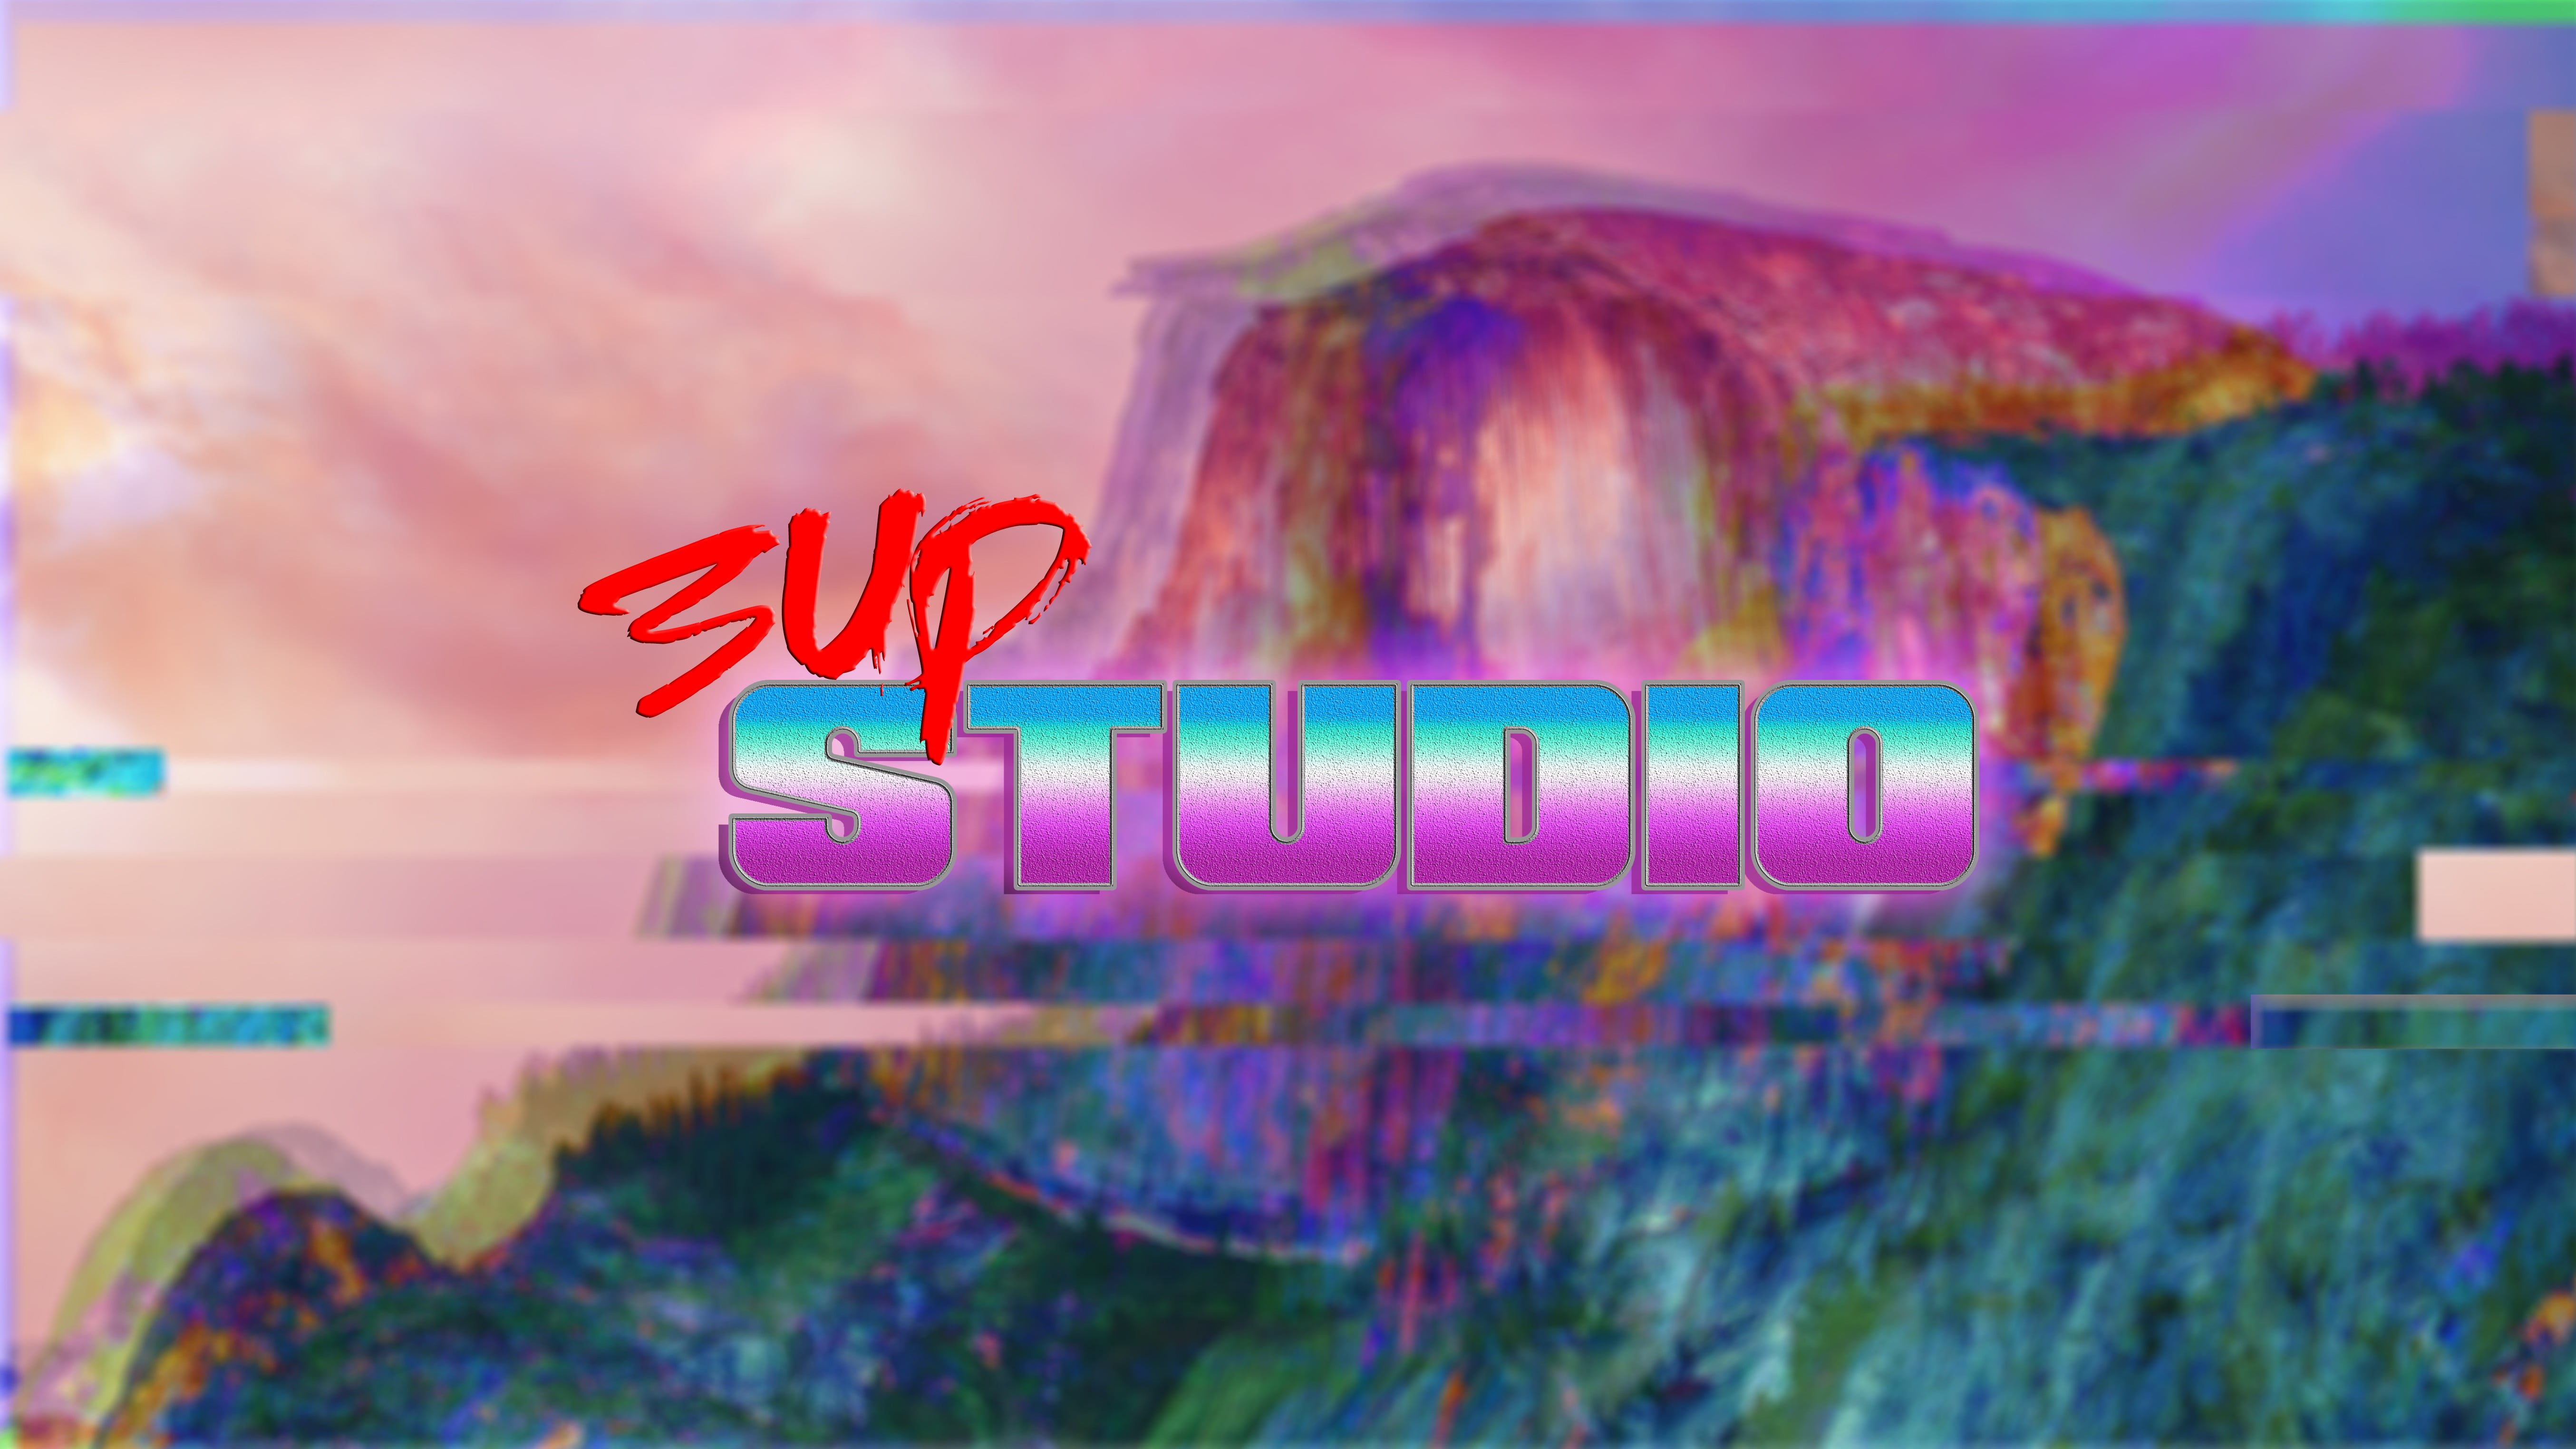 UP Studio logo, 3up studio, 1980s, New Retro Wave, vaporwave HD wallpaper